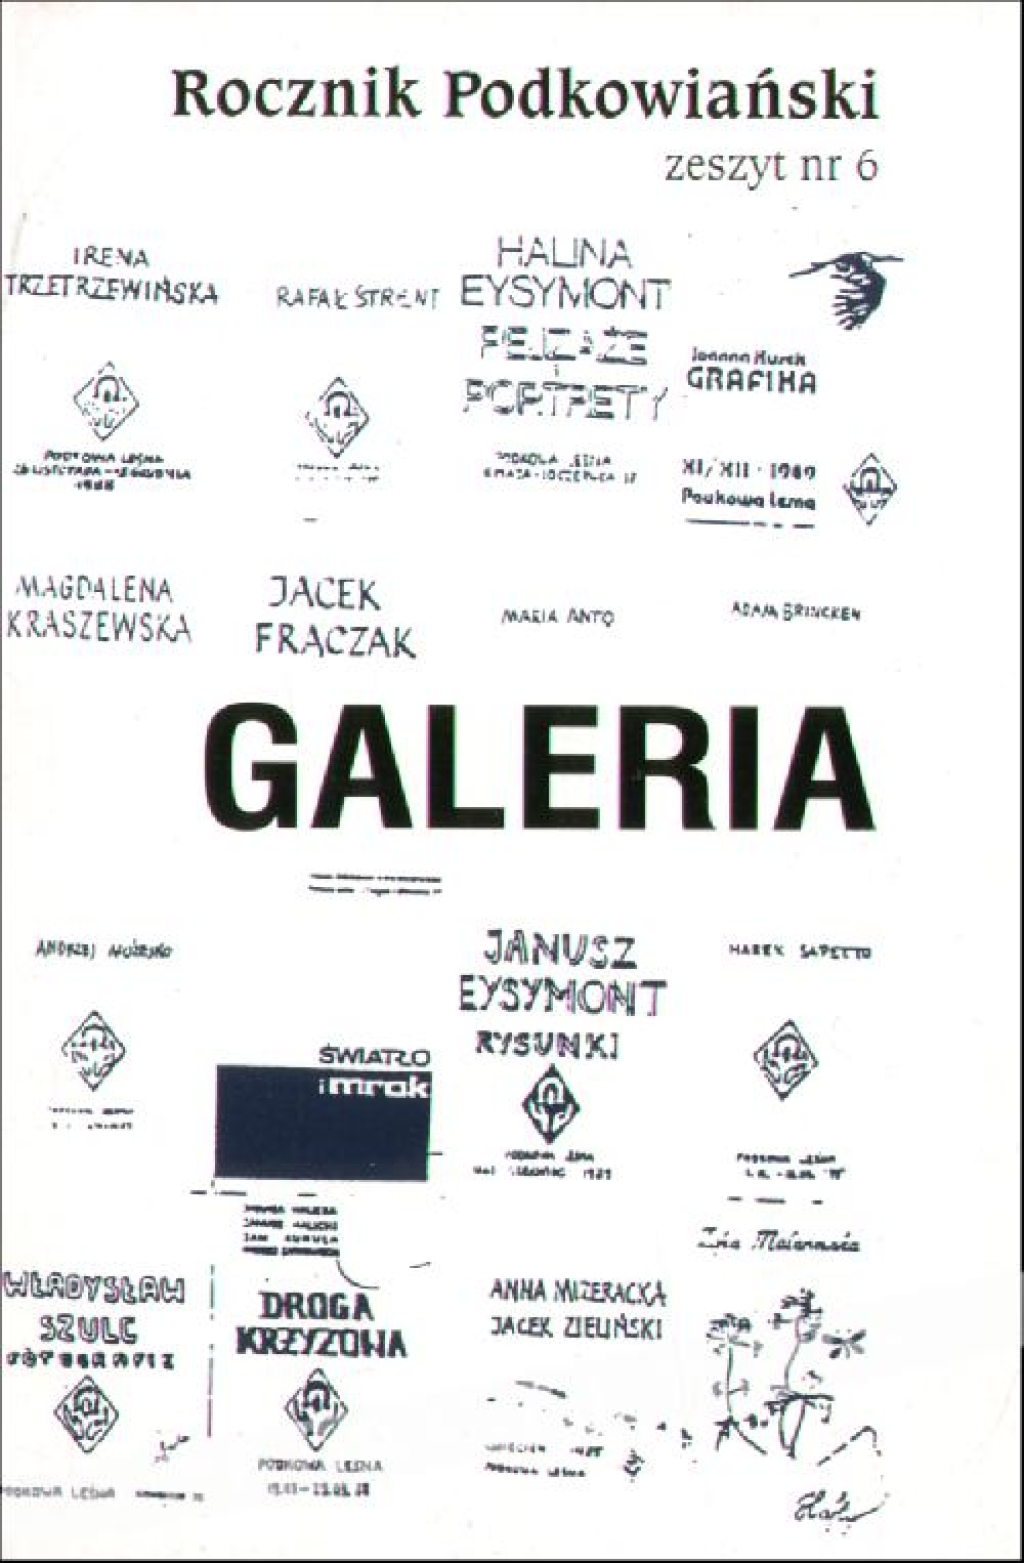 Rocznik podkowiański, zeszyt nr 6. Galeria